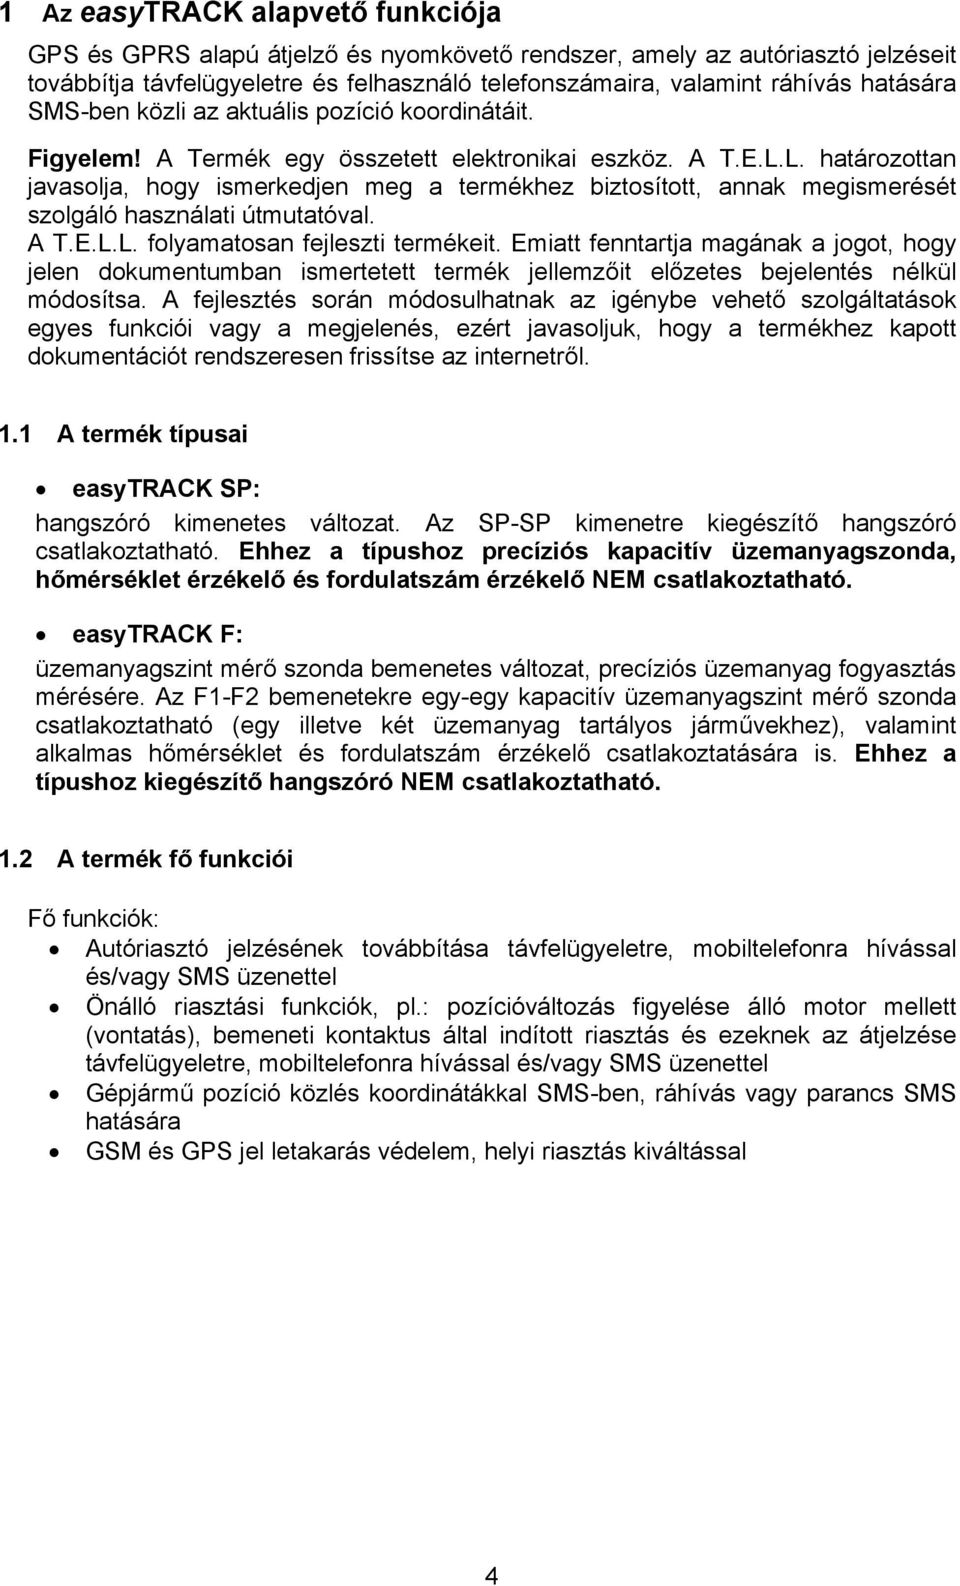 easytrack SP/F GPS / GPRS átjelző és nyomkövető rendszer - PDF Free Download